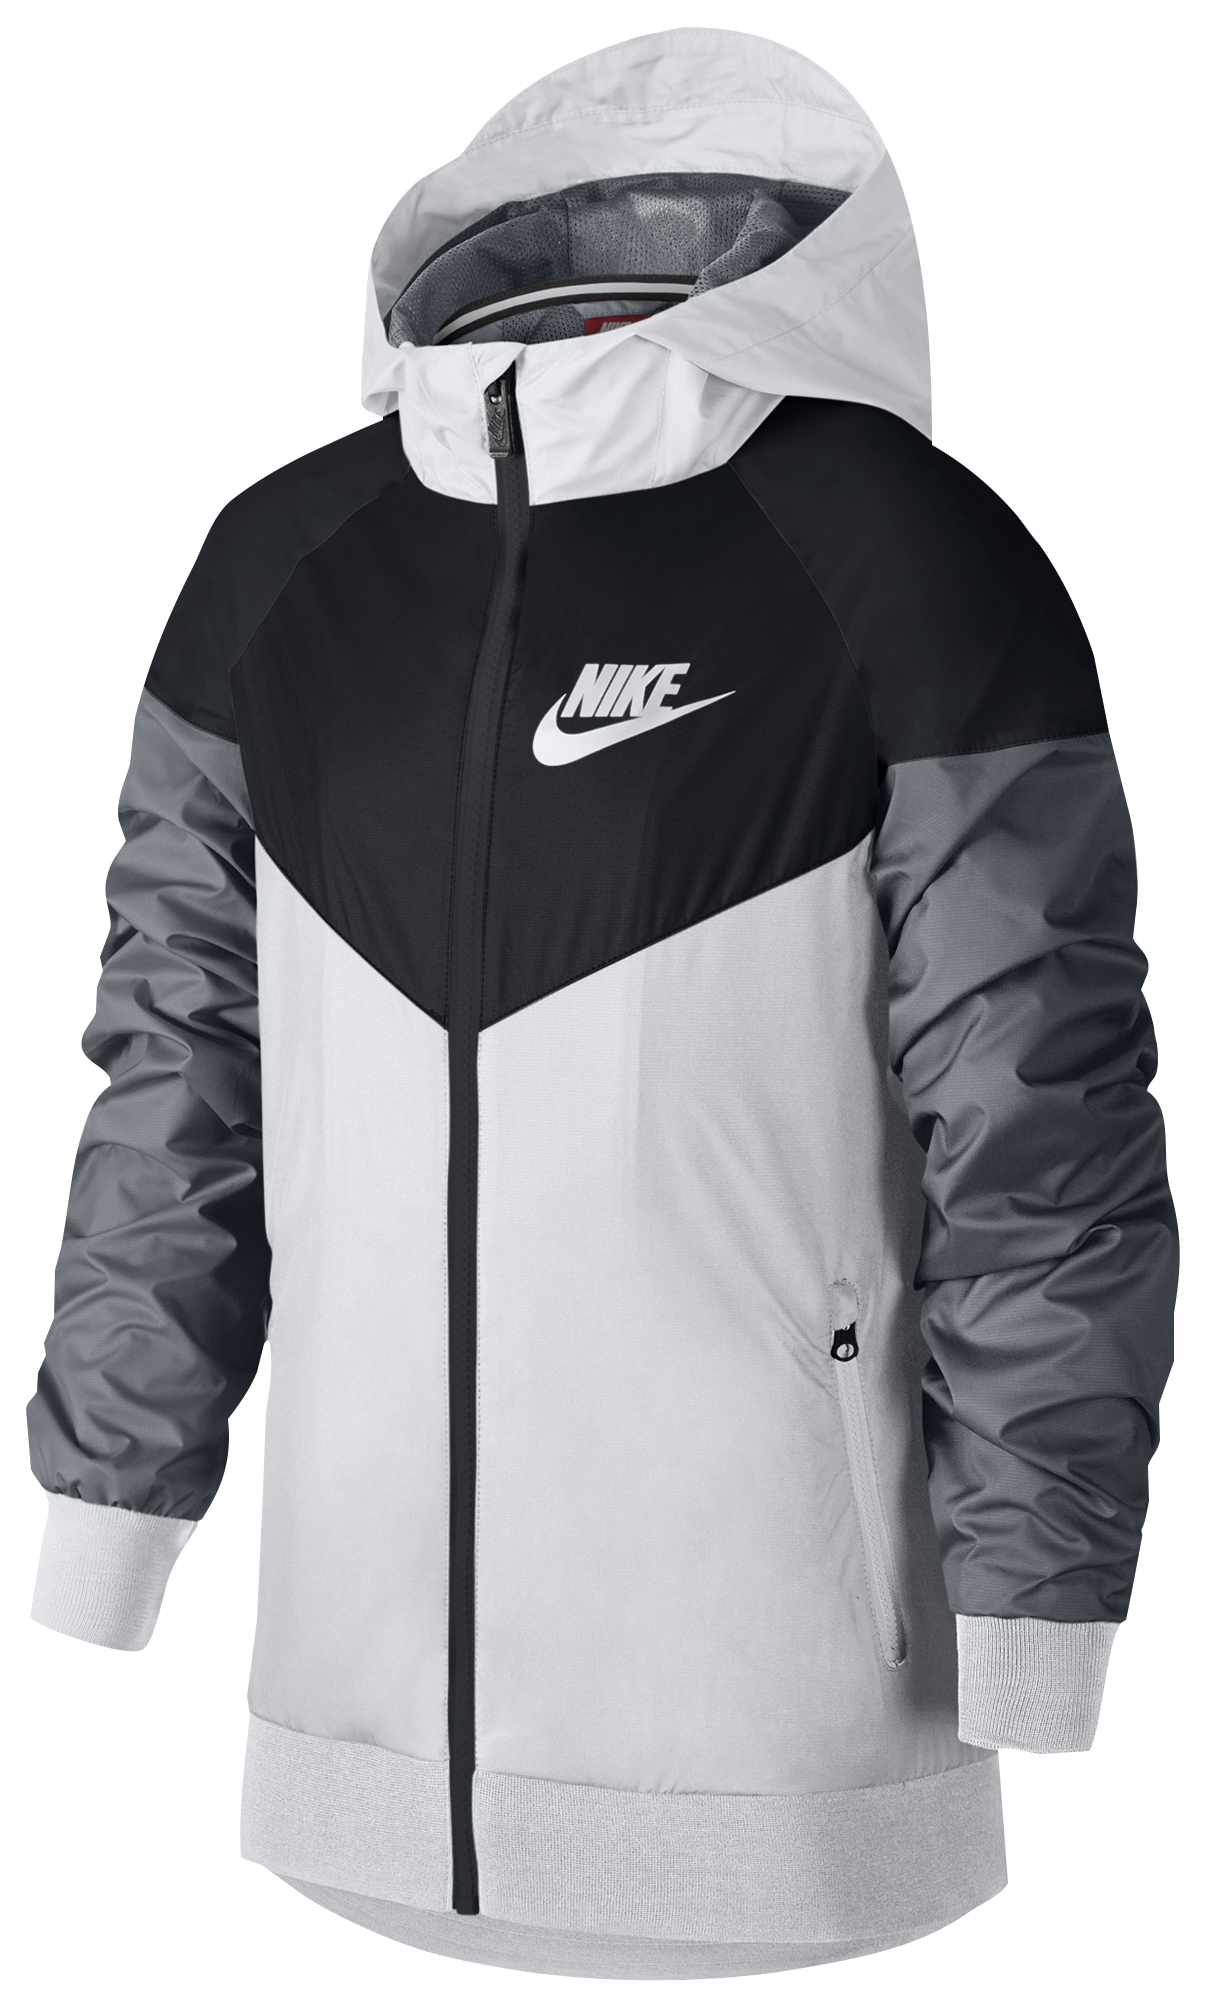 Nike Windrunner CBF Brazil Jacket Glanz Silky Retro Style Size